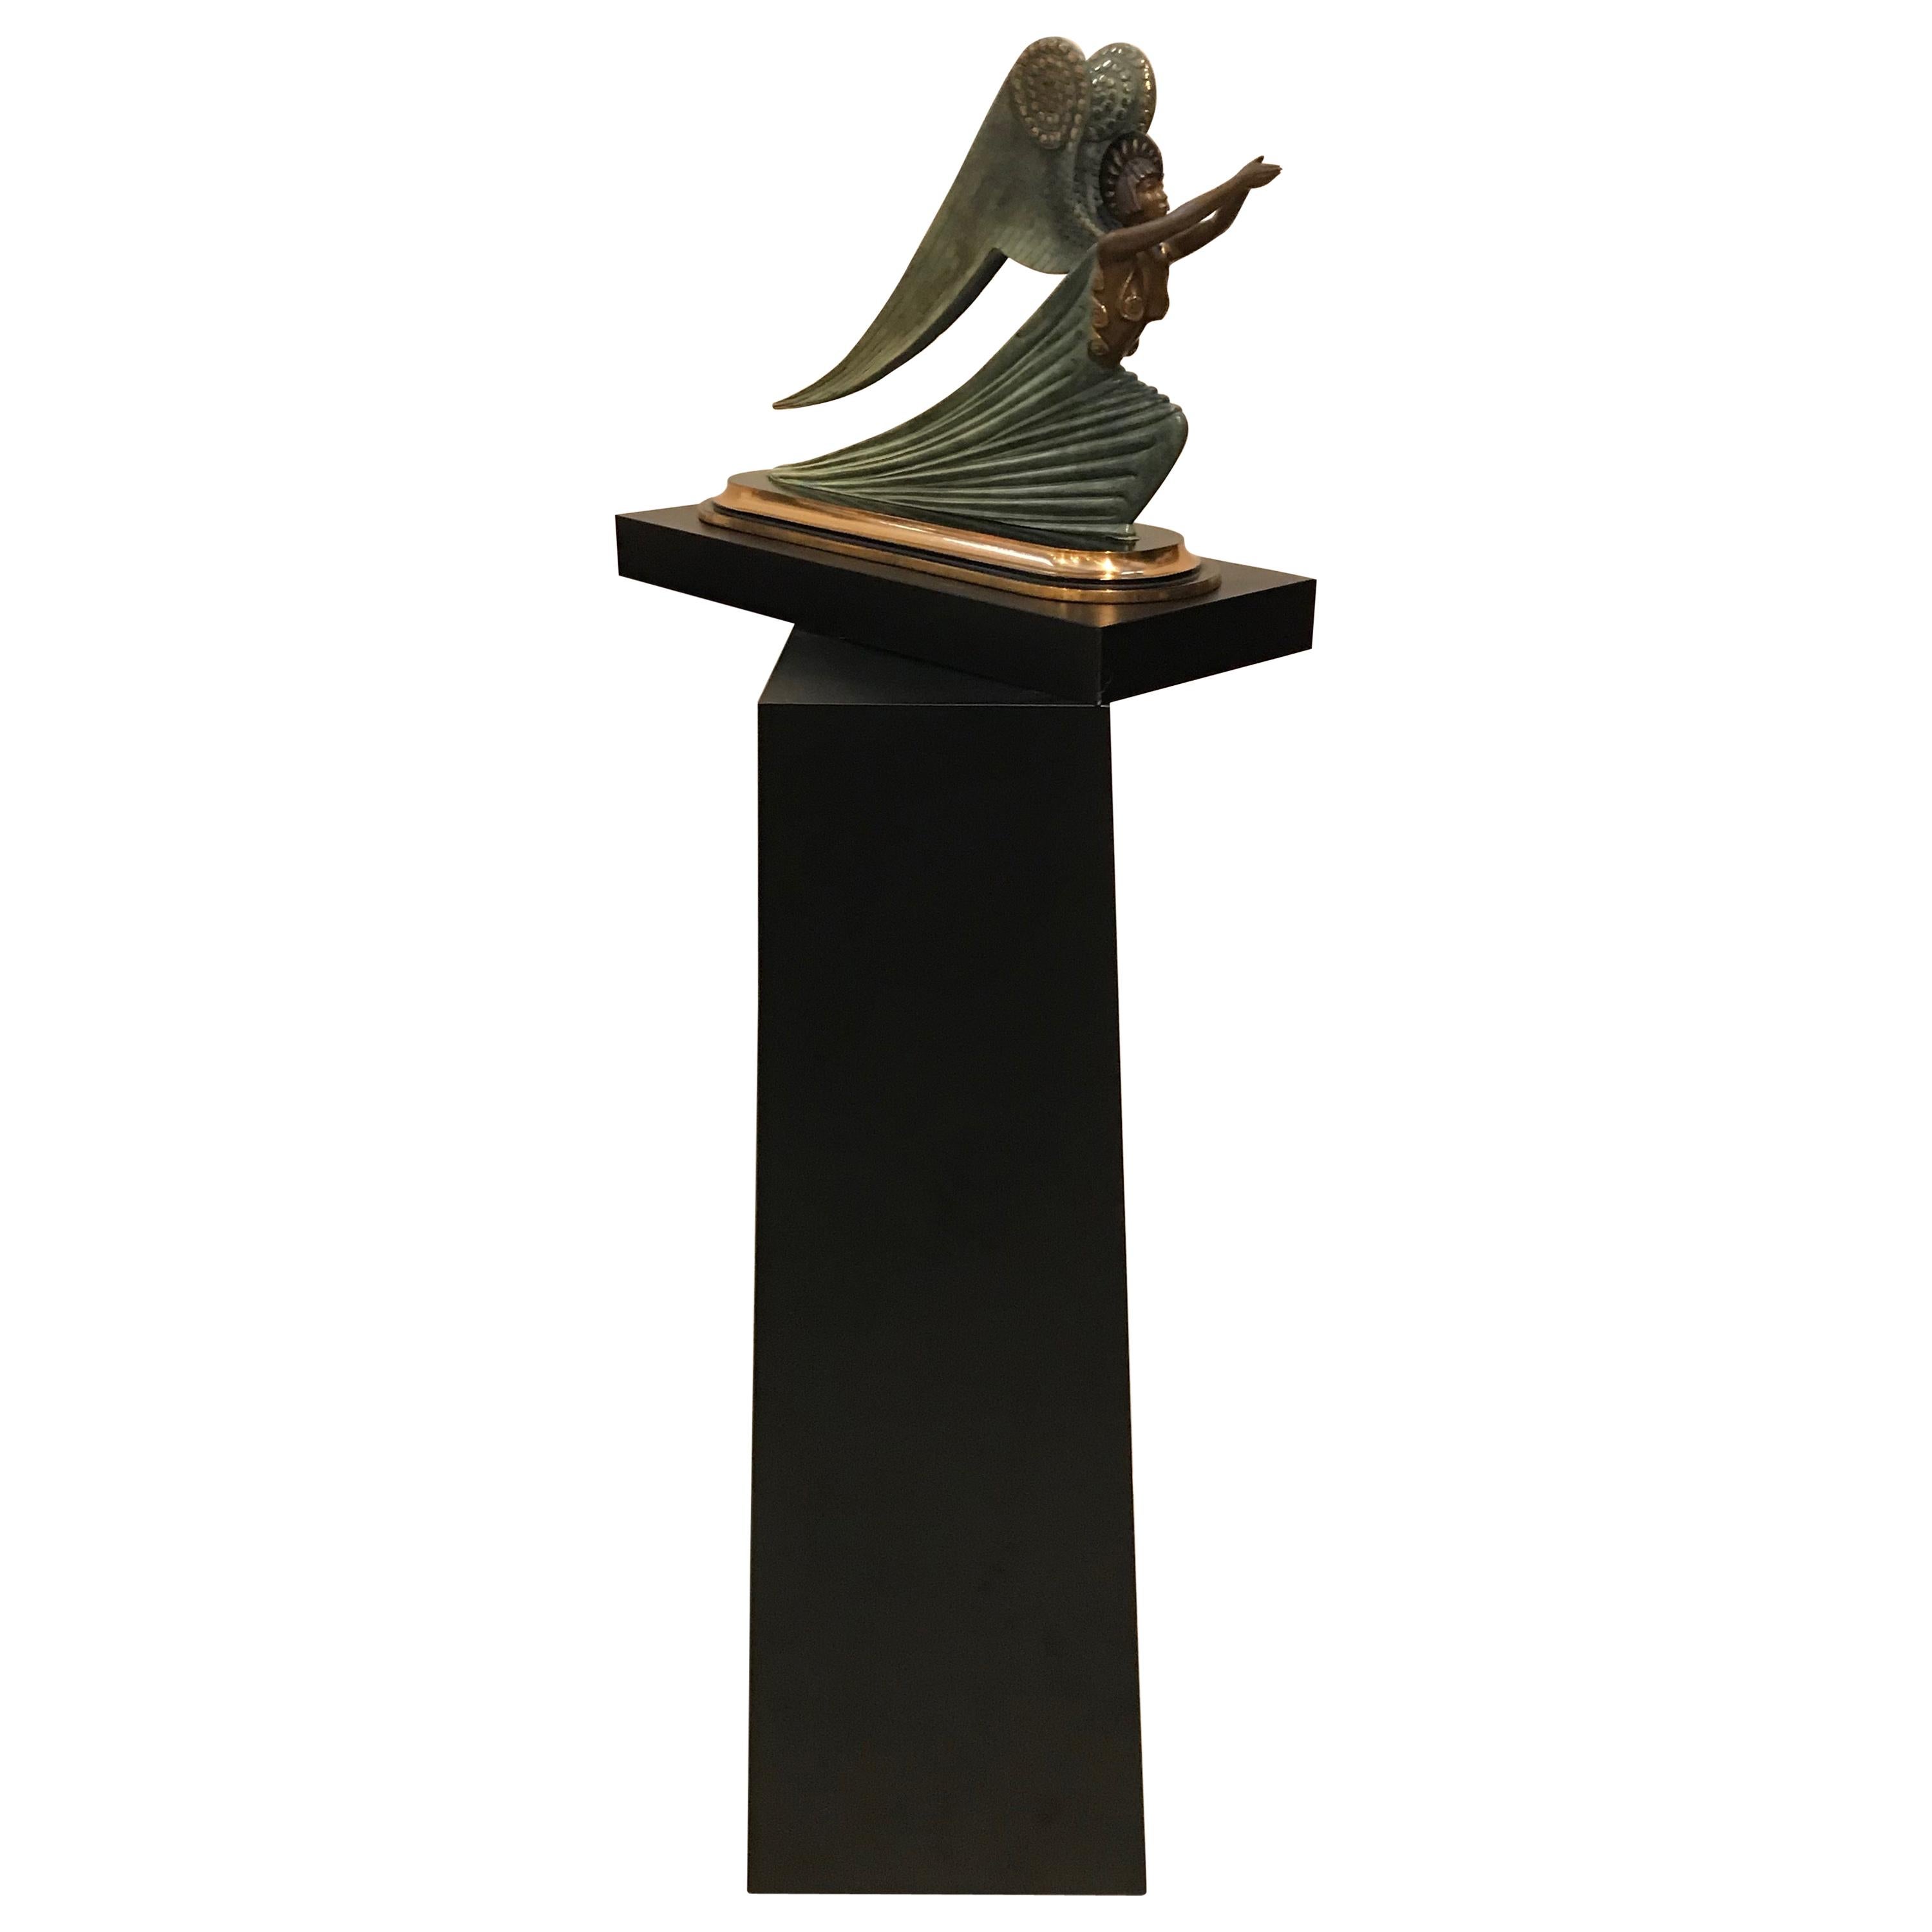 Sculpture en bronze « Ange » de Romain De Tirtoff, édition limitée Erte 1984